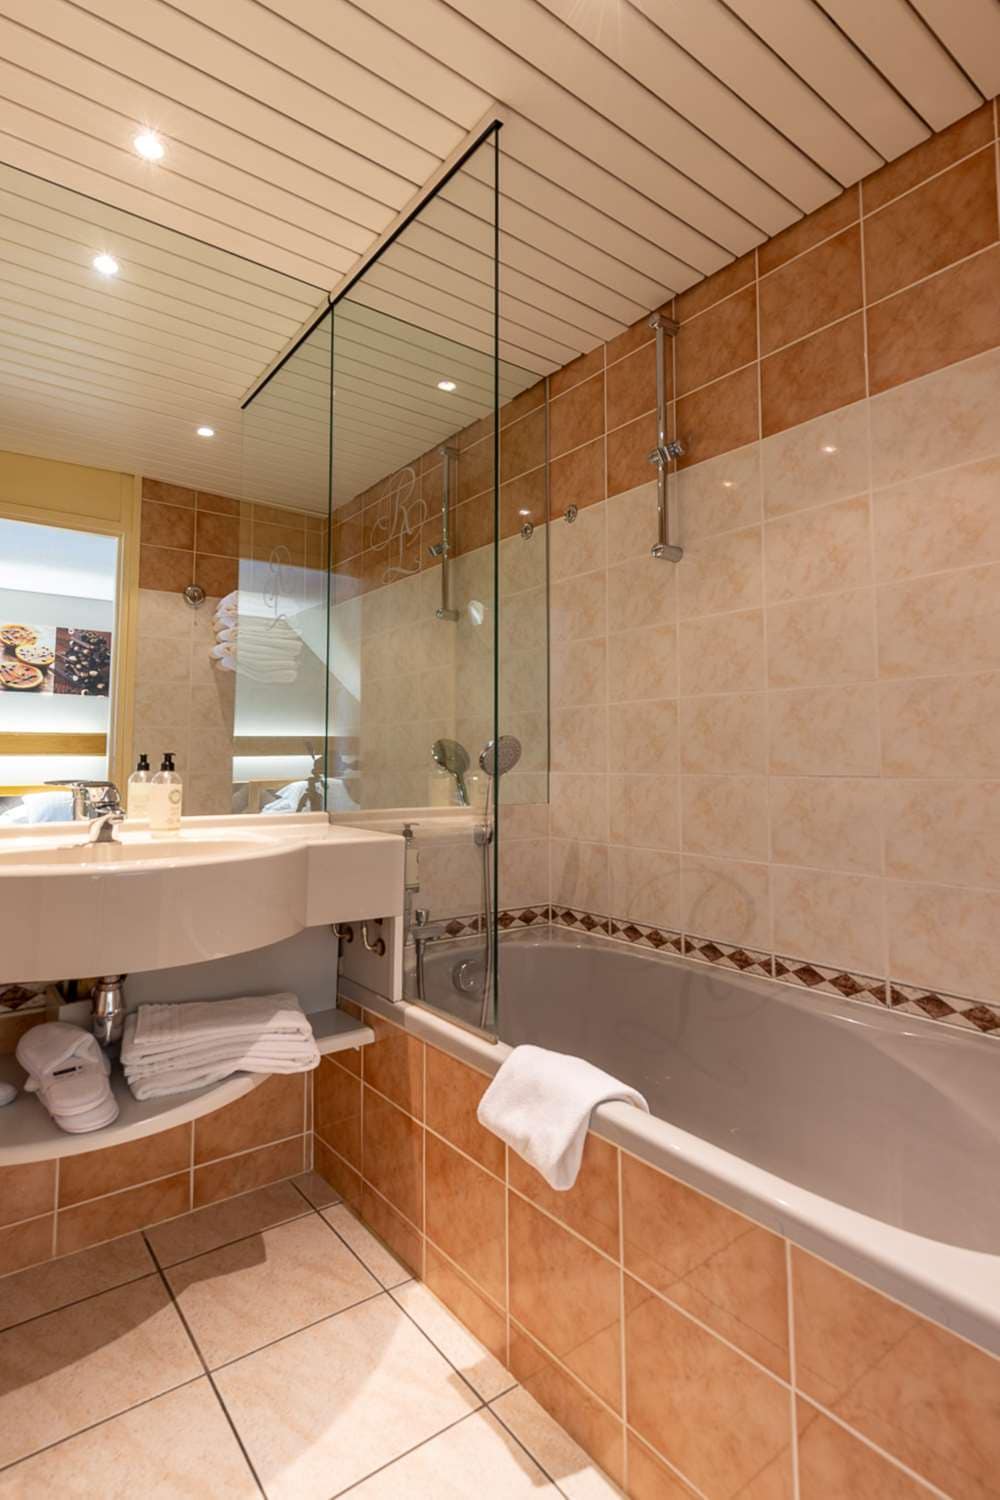 La douche est souvent au cœur de la salle de bains. Si elle doit avant tout  être pratique, c'est aussi l'endroit idéal pour se détendre et se relaxer.  Que ce soit pour